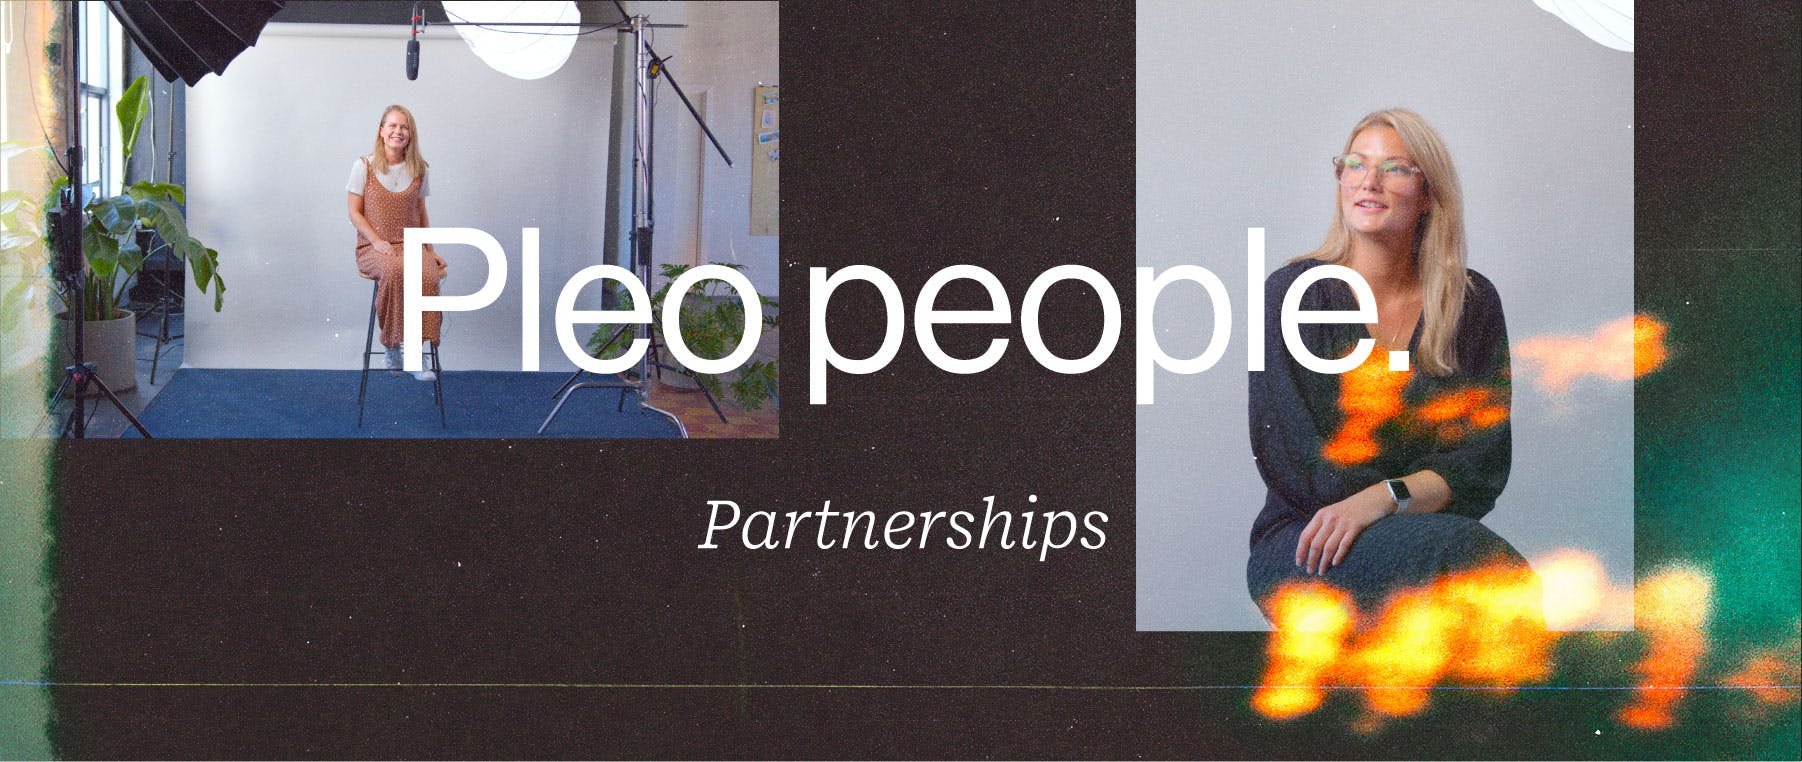 Partnerships at Pleo